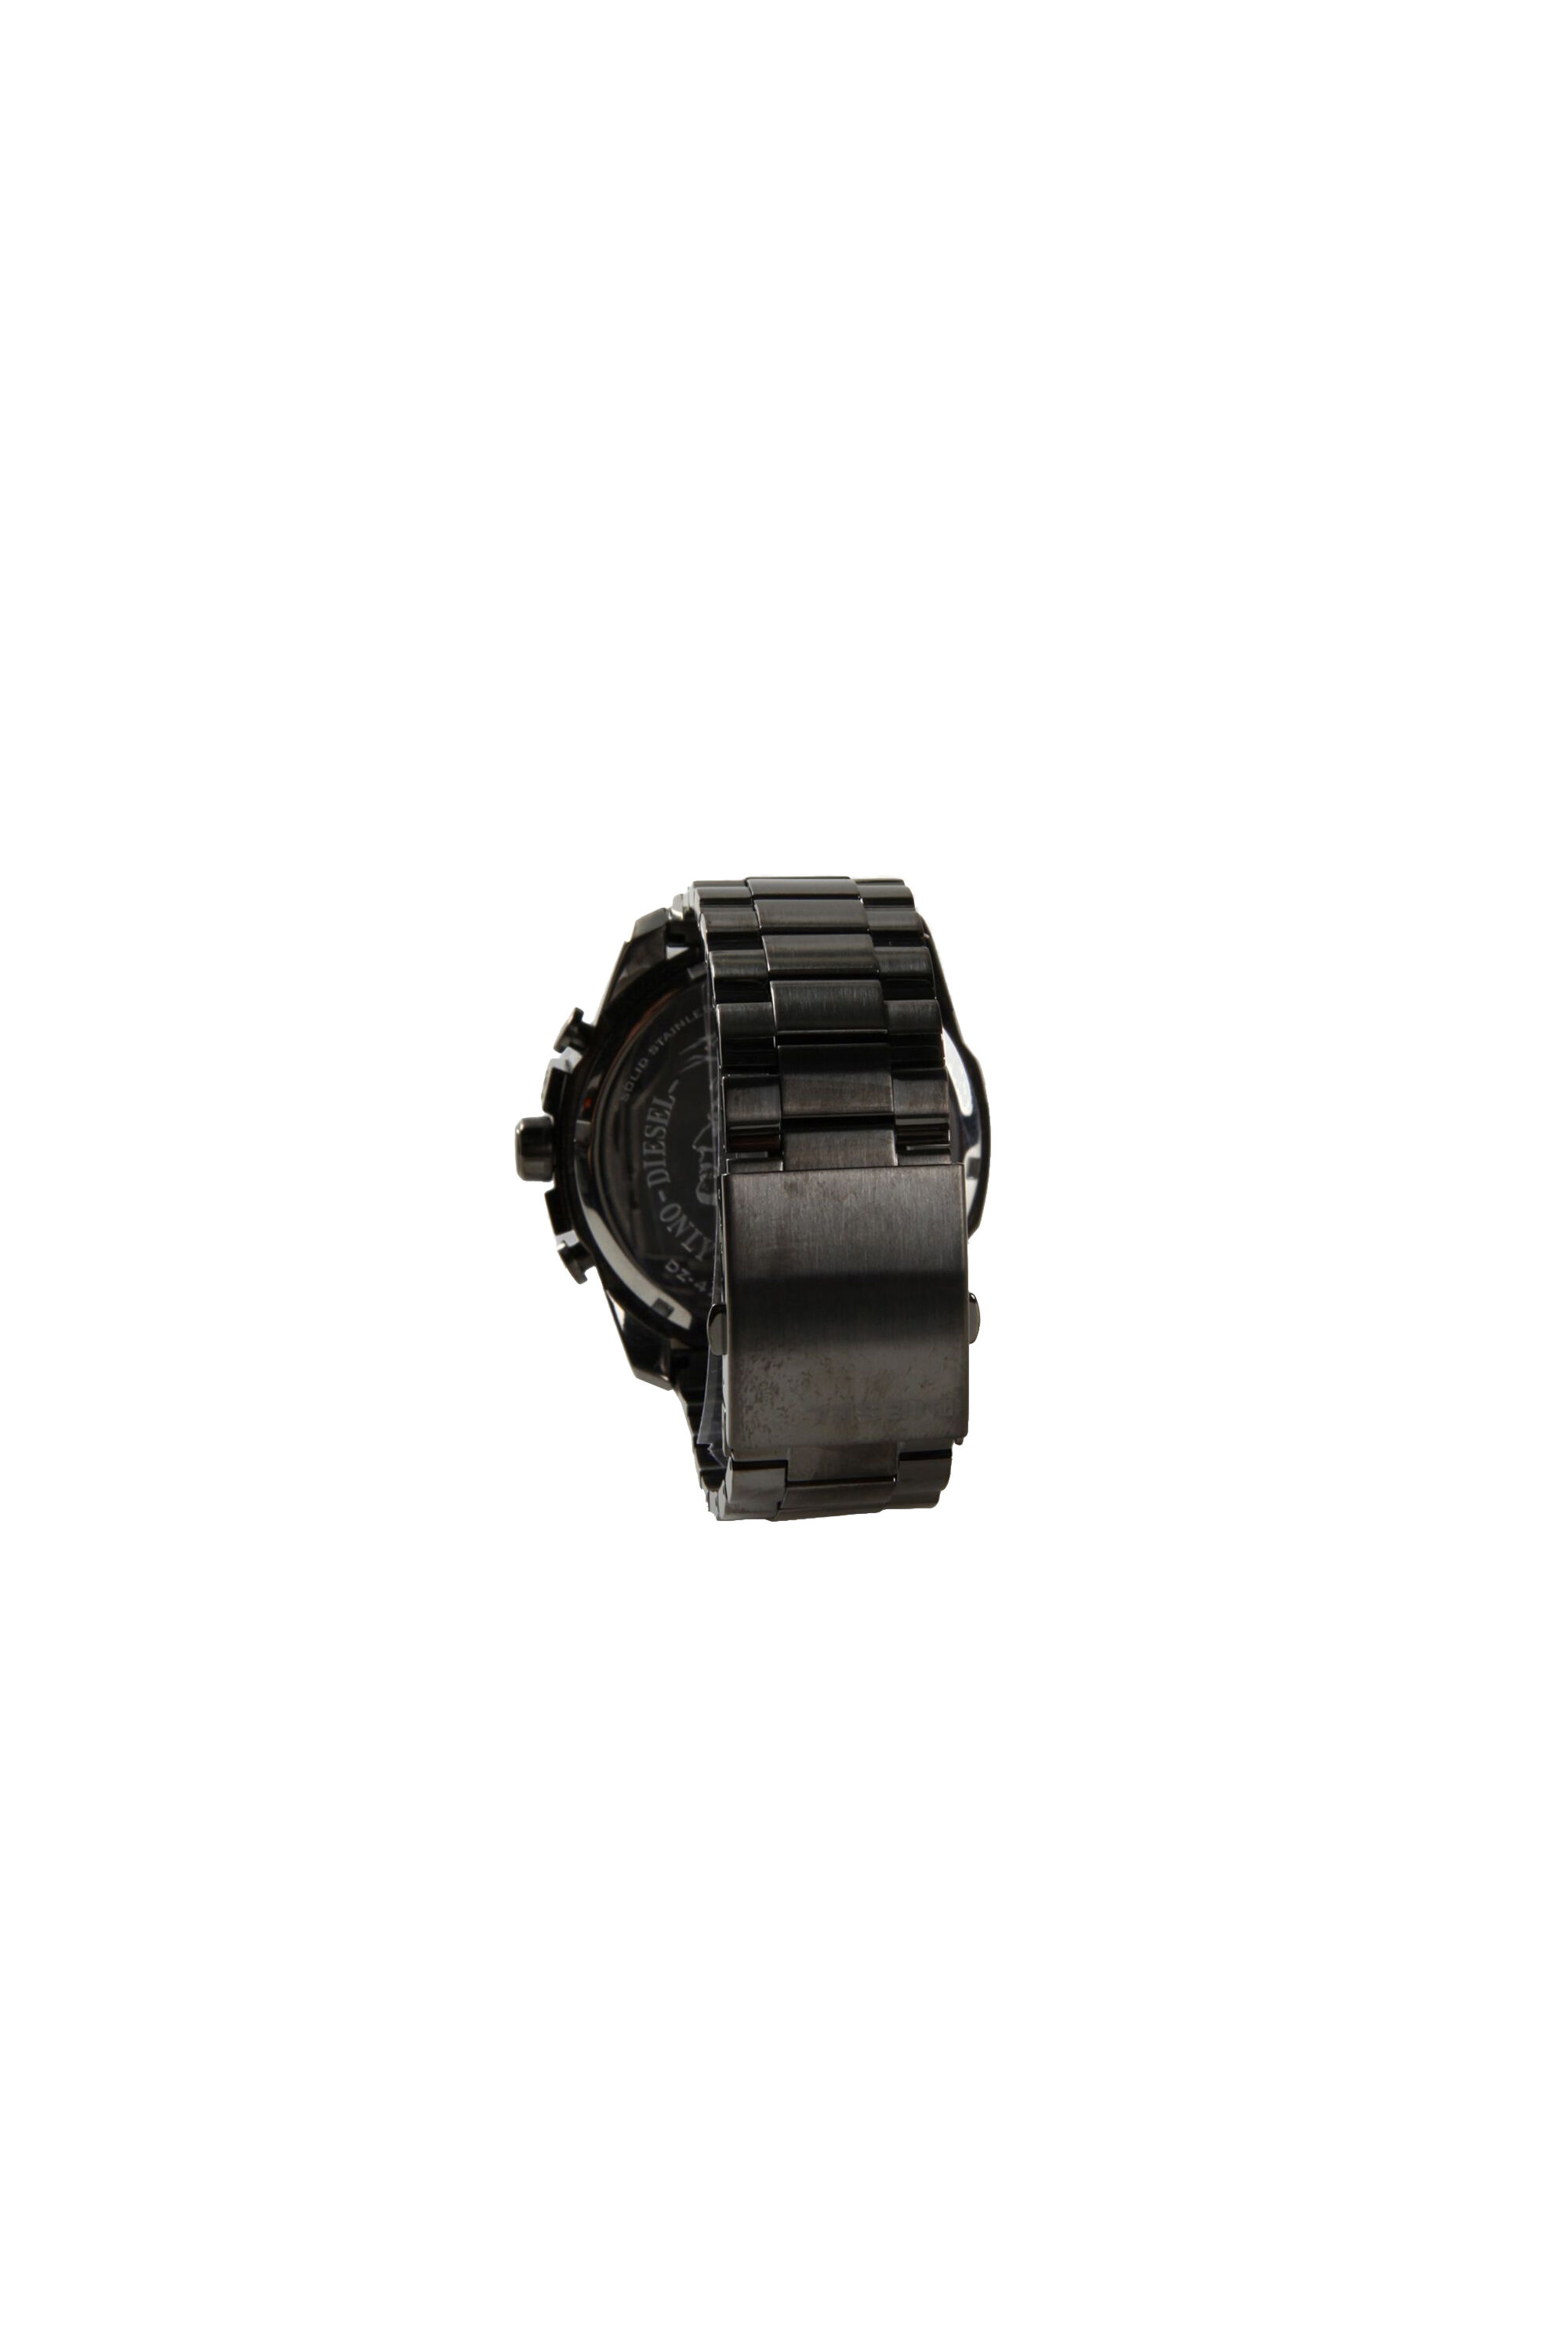 Diesel - DZ4282, Herren Mega Chief Uhr mit schwarzen Optik in Grau - Image 2